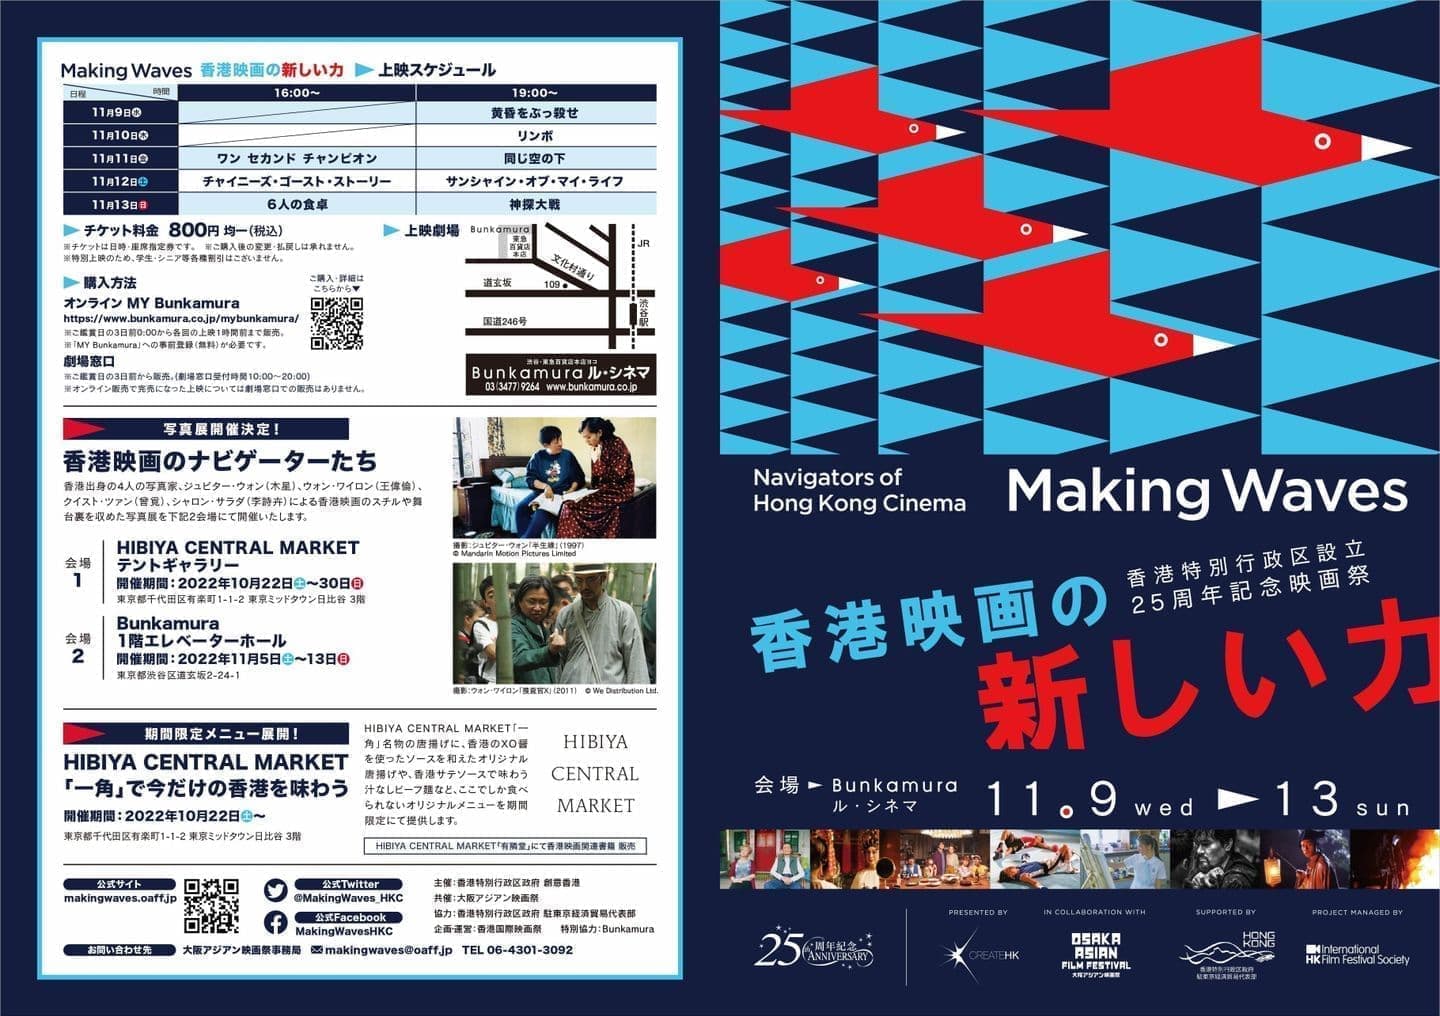 2022年｜香港特別行政区設立25周年記念映画祭 Making Waves - Navigators of Hong Kong Cinema 香港映画の新しい力（2022年11月9日～13日開催）